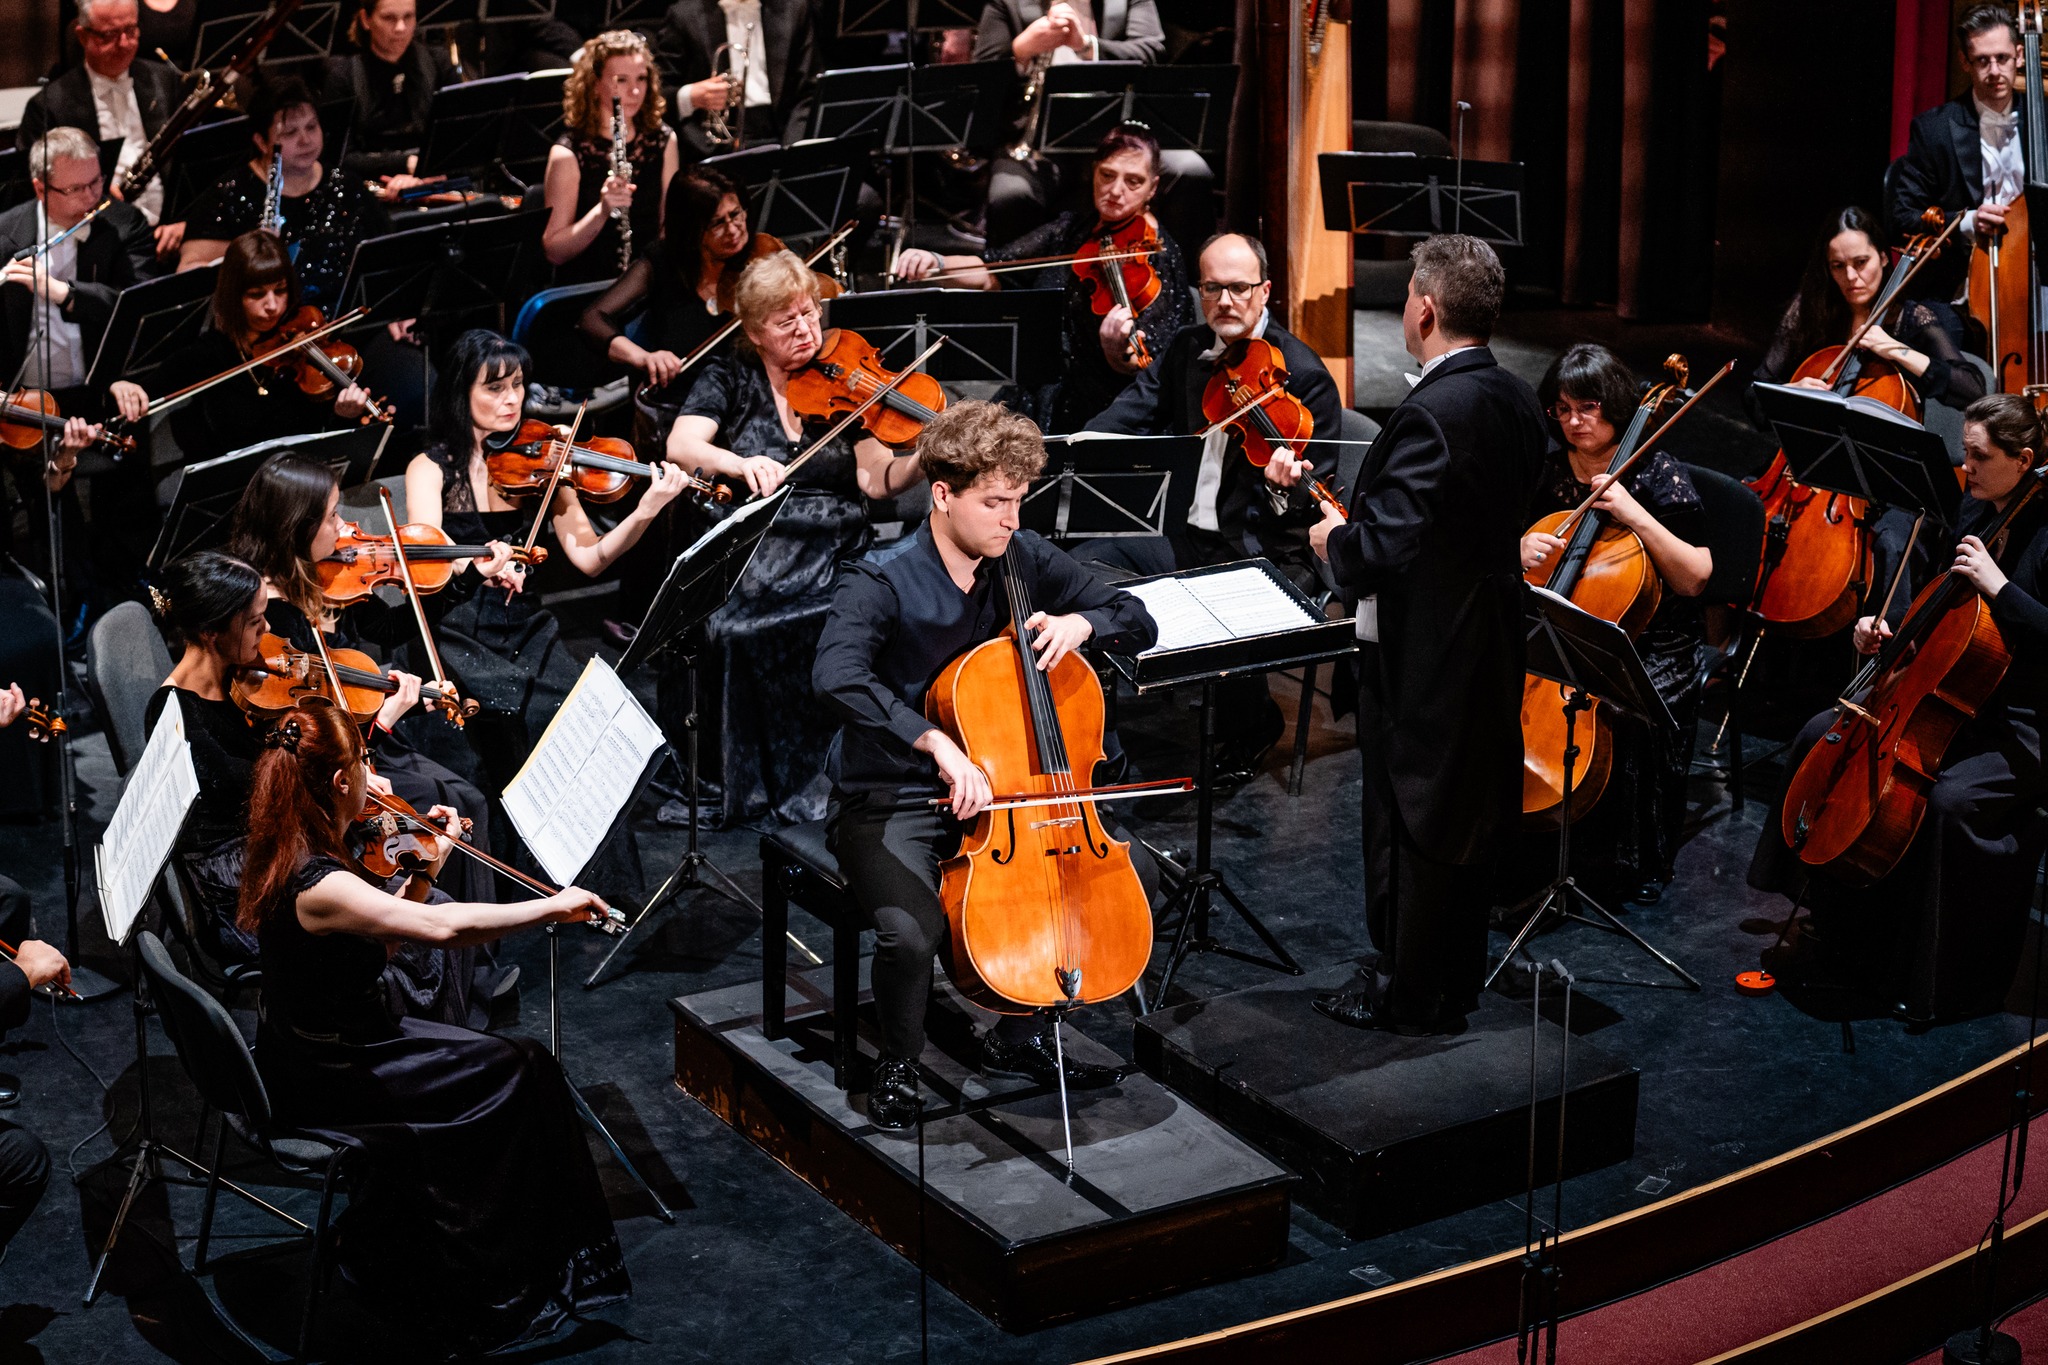 Die Virtuosen - Talentshow seit zehn Jahren im Dienste der klassischen Musik